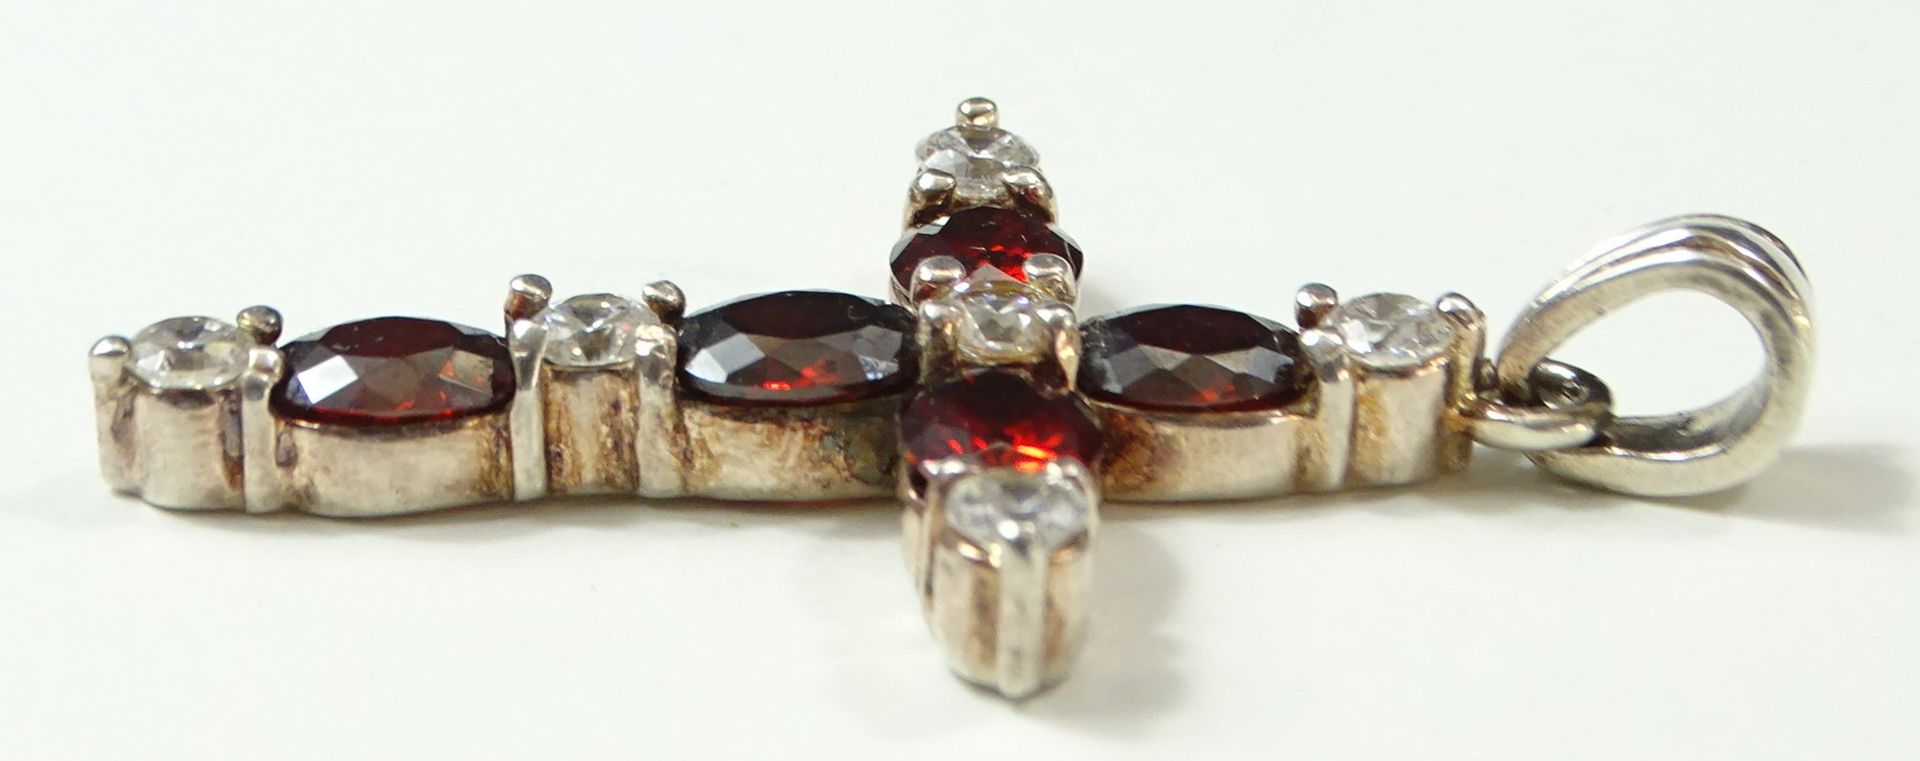 Kreuzanhänger aus roten und klaren Steinen in 925er-Silbermontur, L. 5 cm, 10 gr., leicht reinigung - Bild 3 aus 4